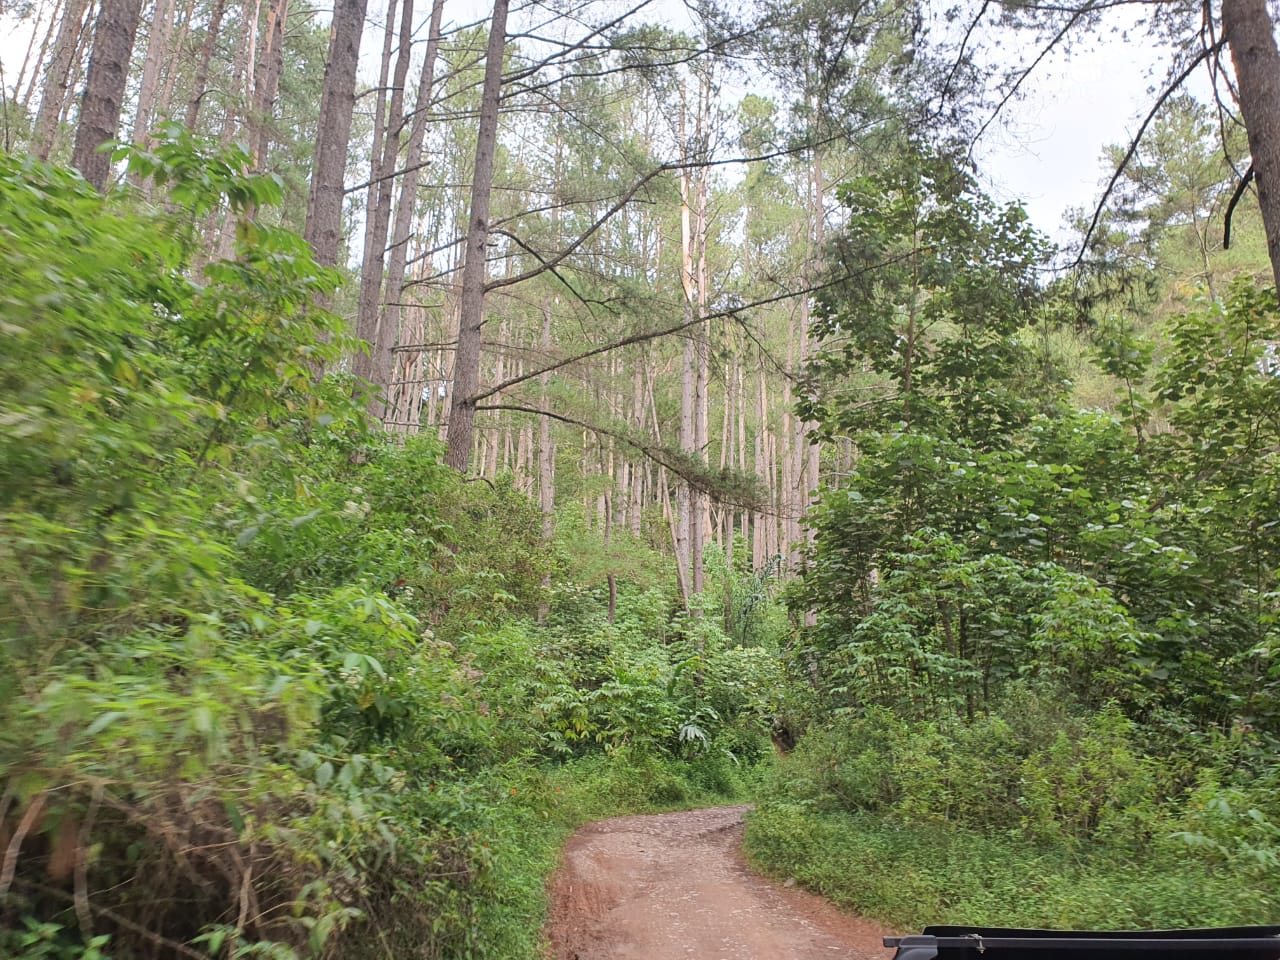 Jalan selebar 4,5 meter dengan panjang sekitar 30 km meliuk-liuk naik turun bukit menembus hutan pinus dengan medan yang menguji adrenalin